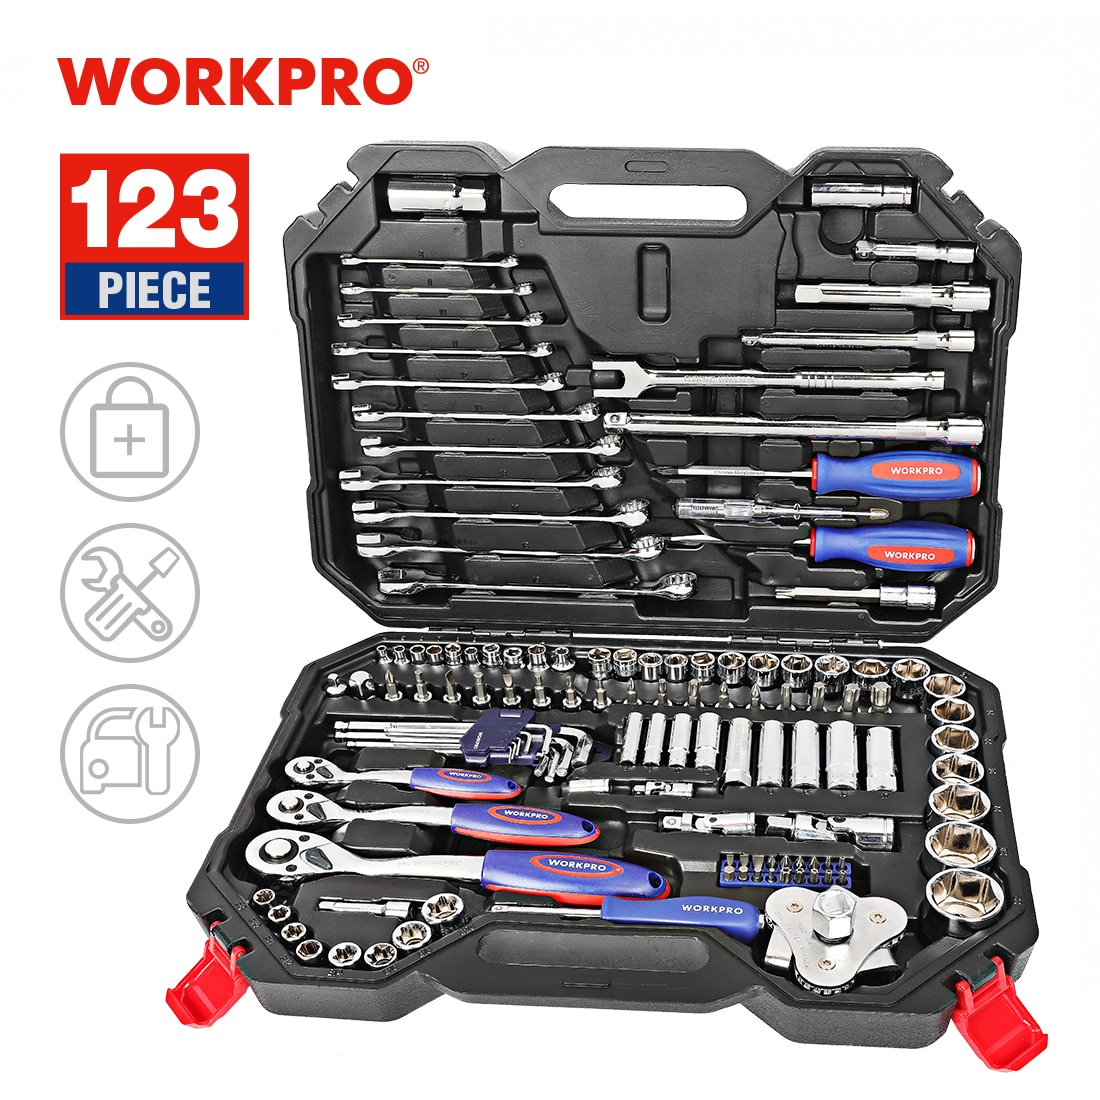 WORKPRO-kit de herramientas de reparación profesional para vehículos, juego de herramientas de mano para reparación de coches, bicicletas, llave inglesa, juego de llaves